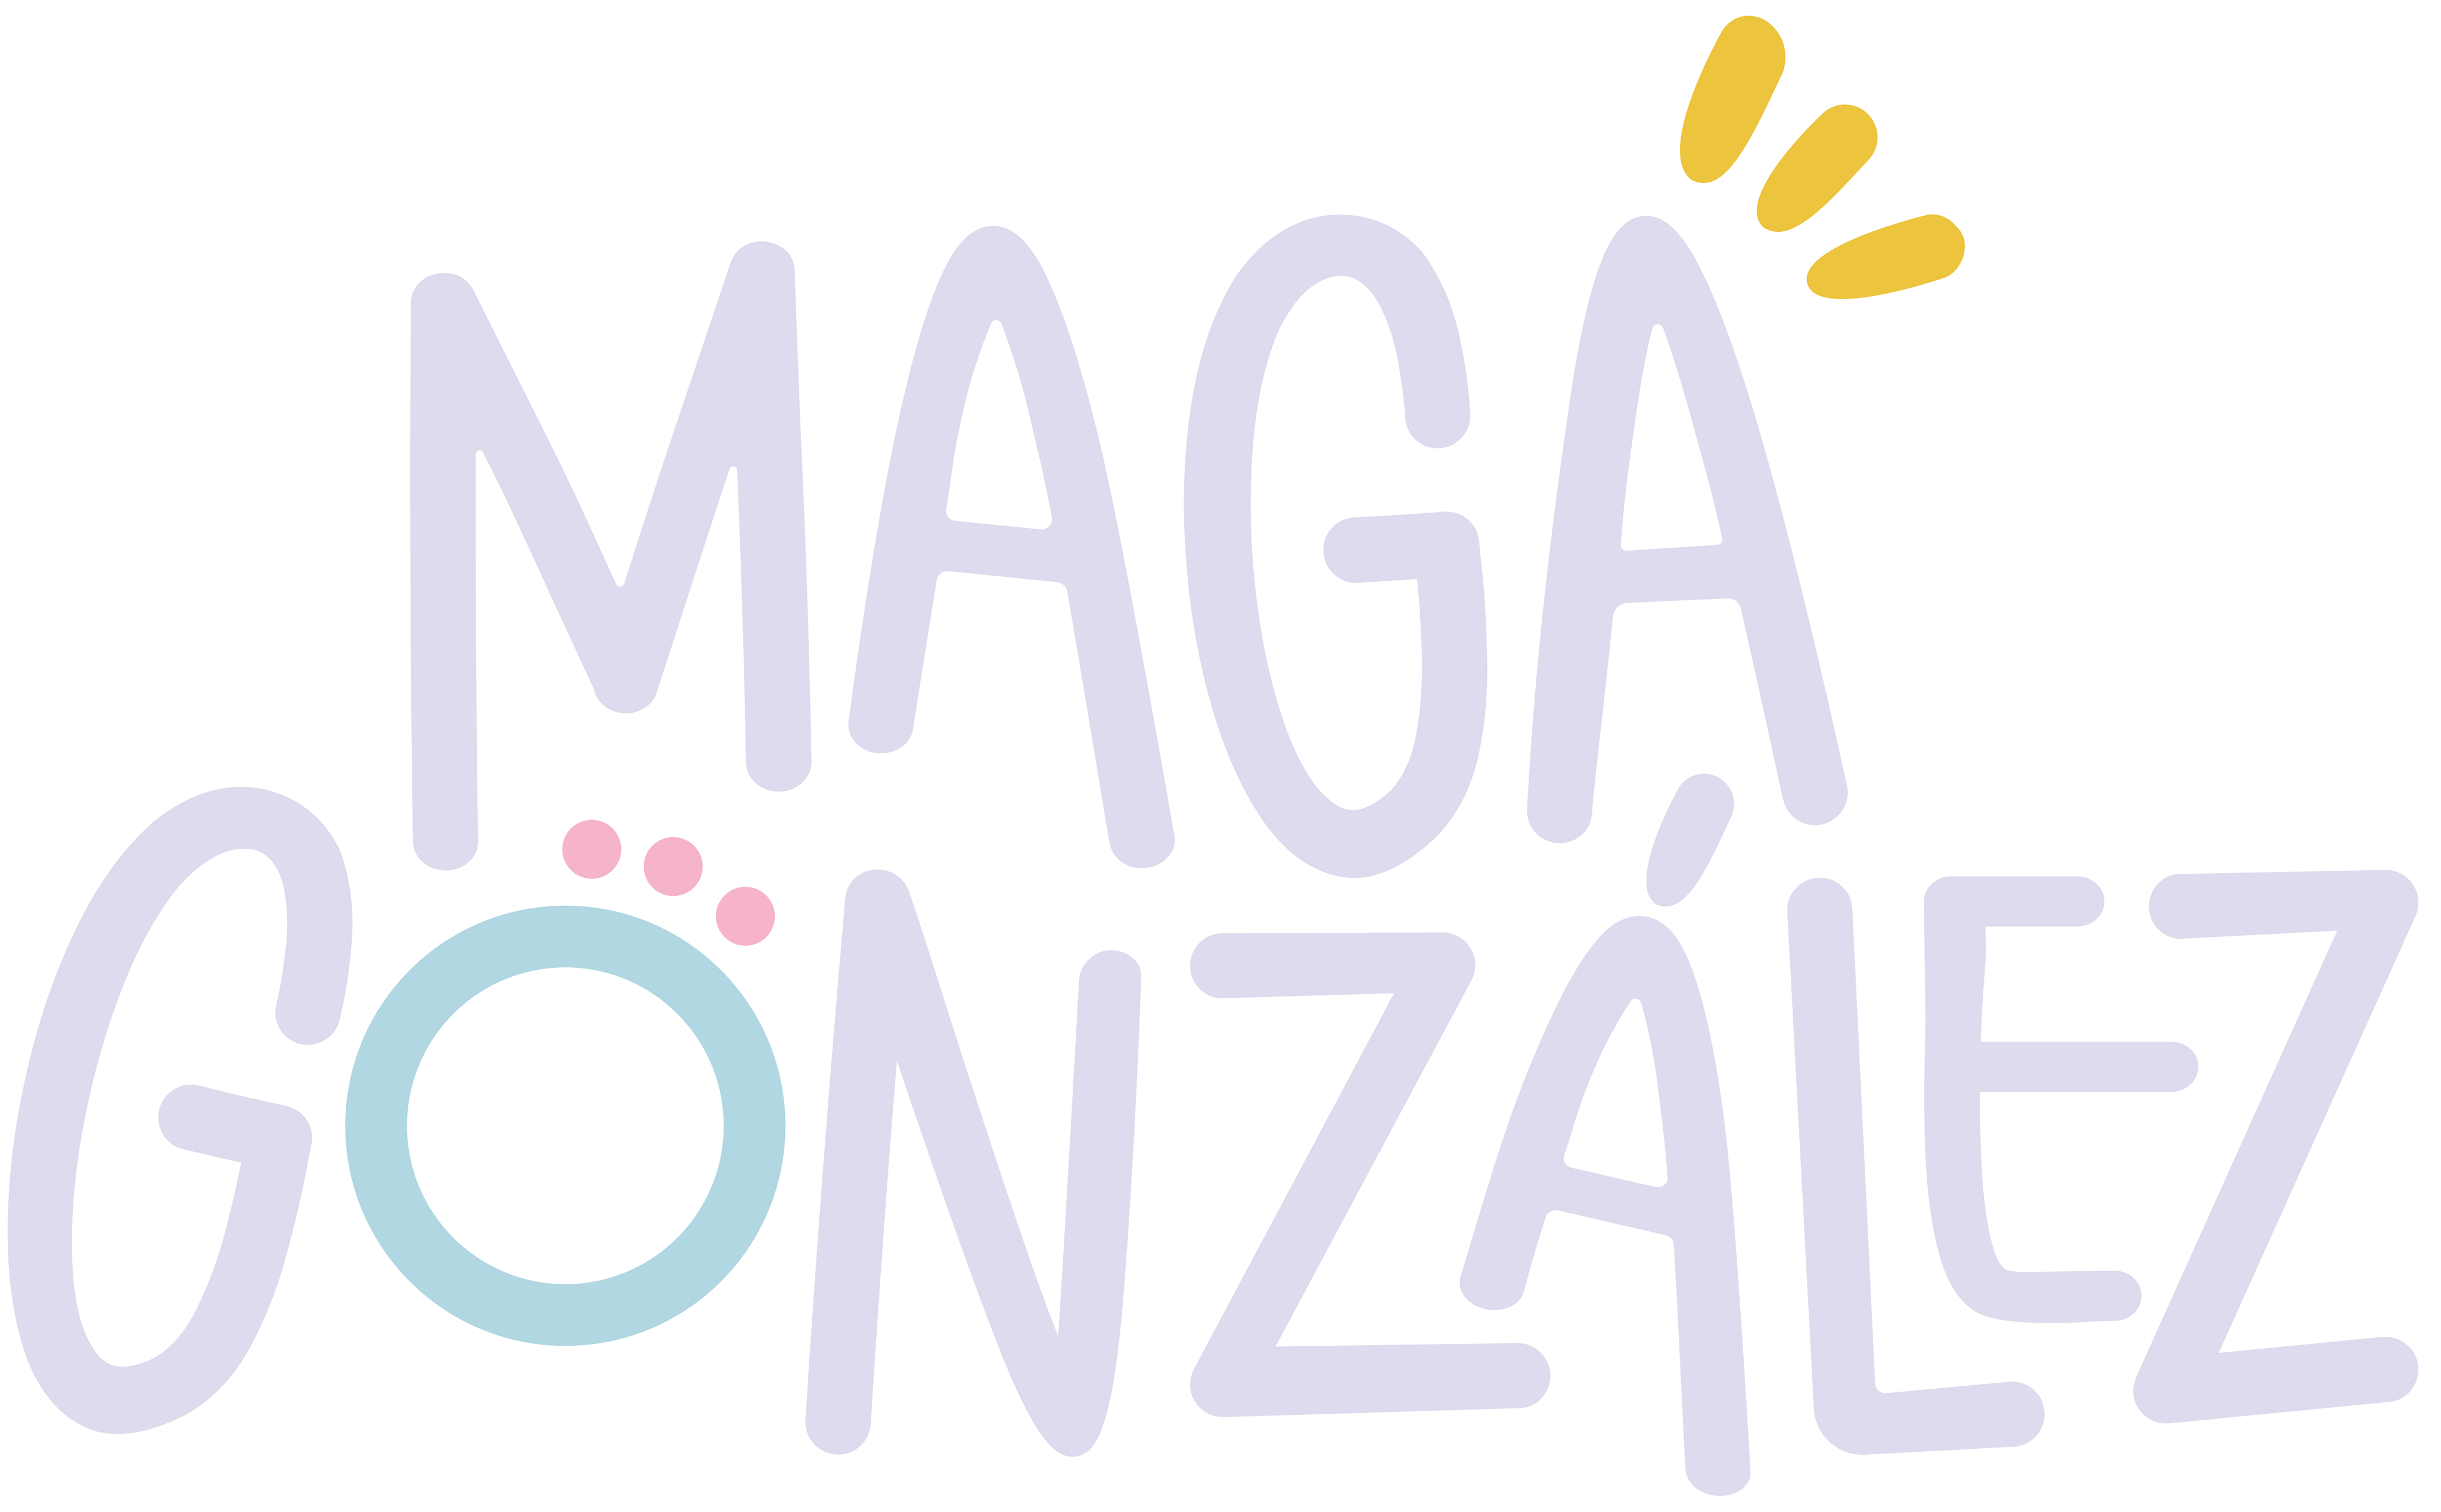 Maga Gonzalez